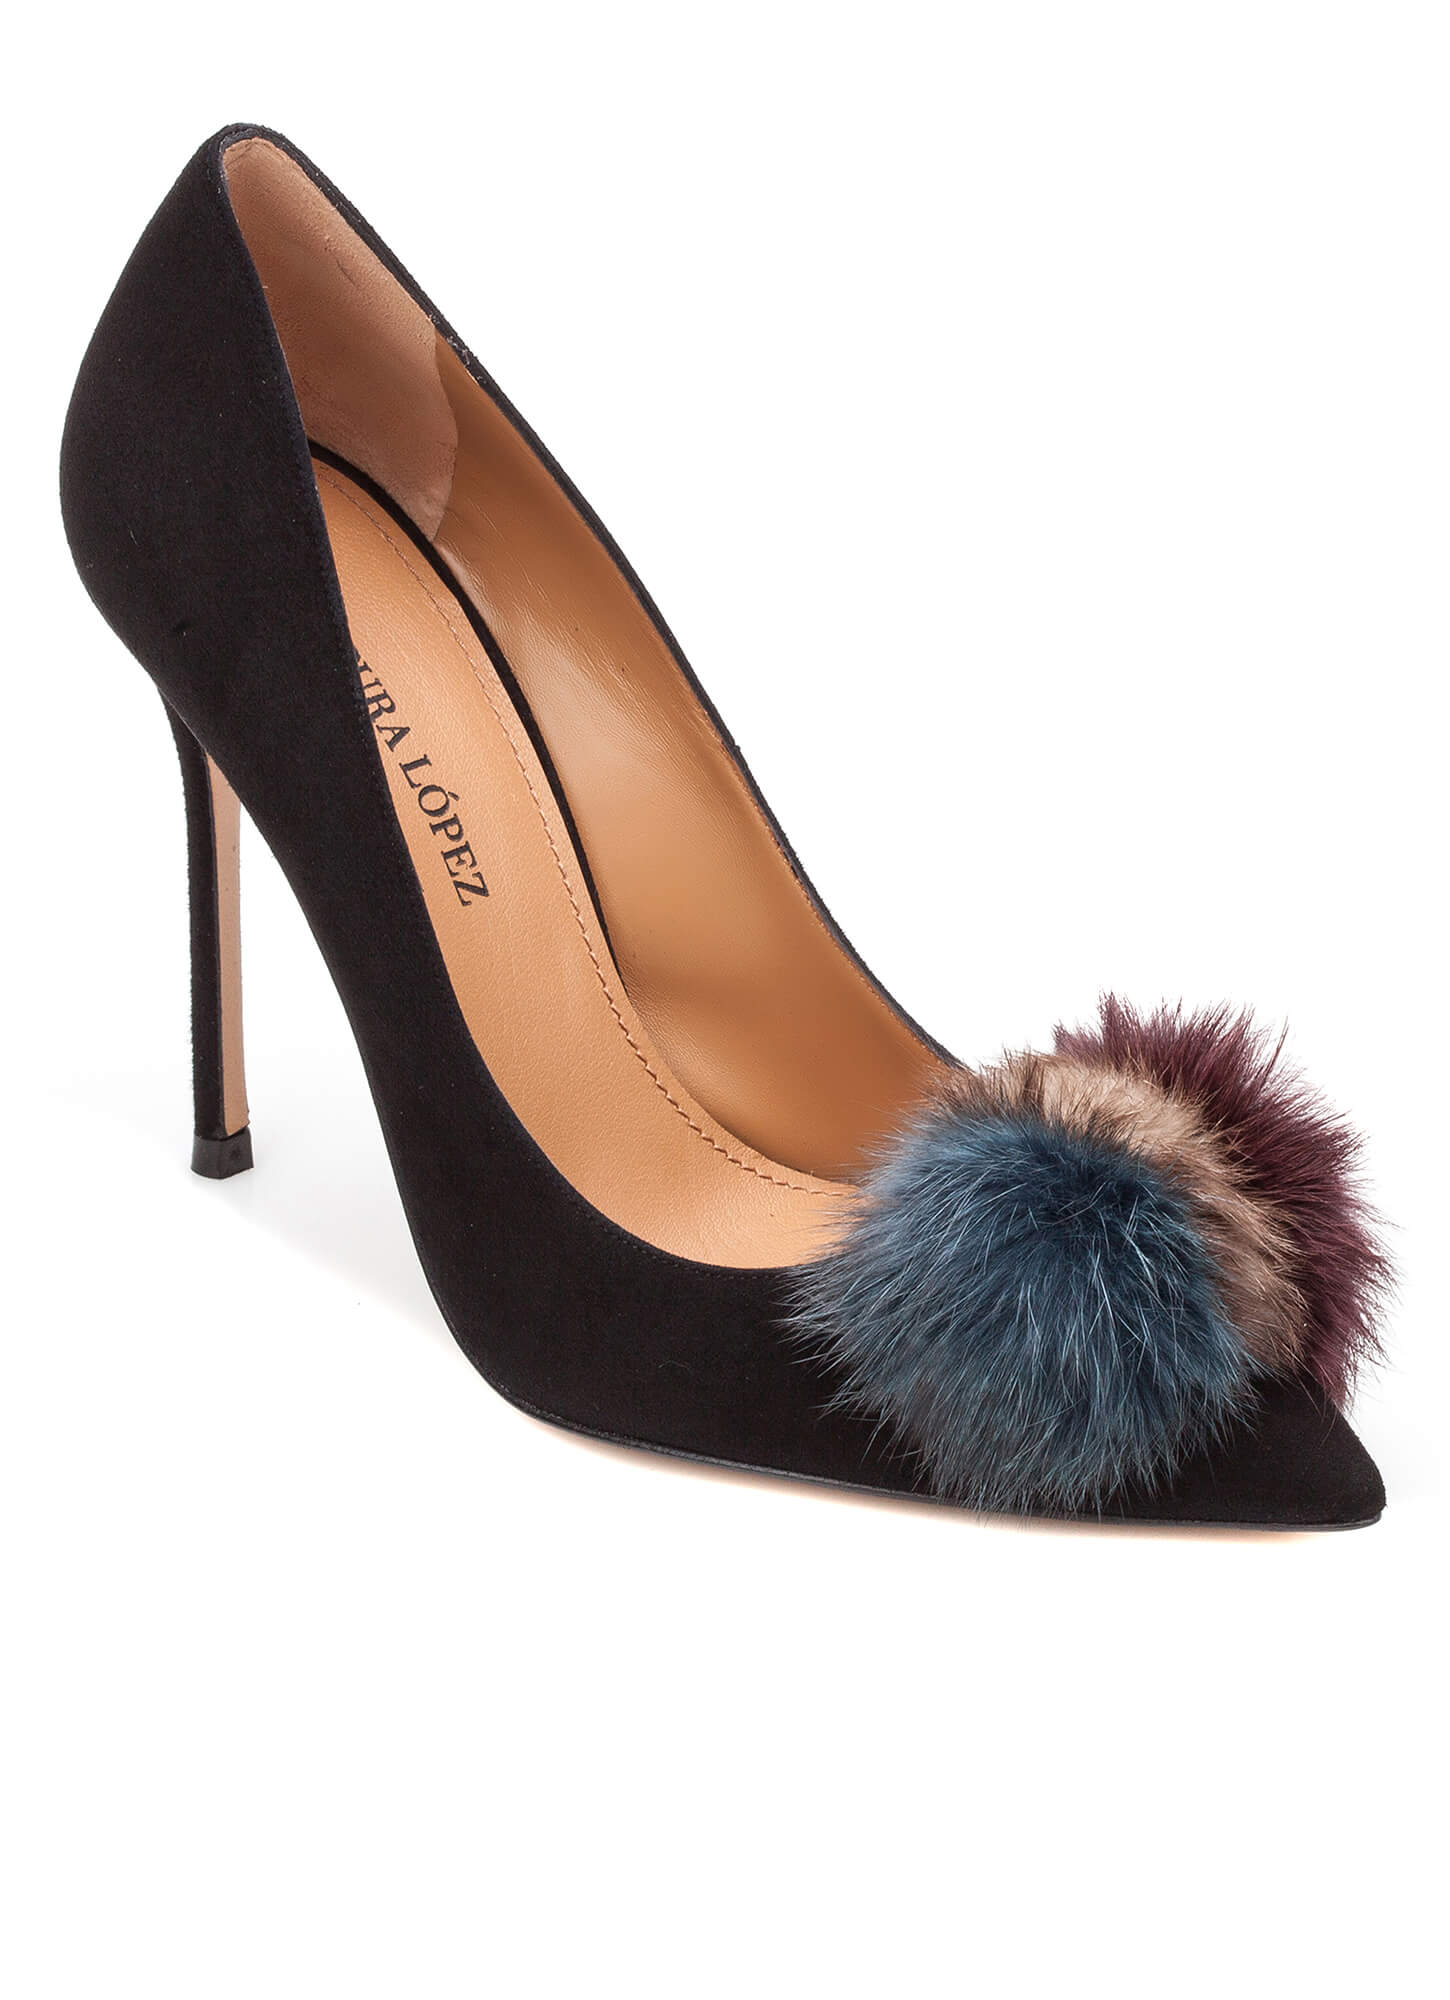 Black pompom-embellished heeled pump - online shoe store Pura Lopez ...